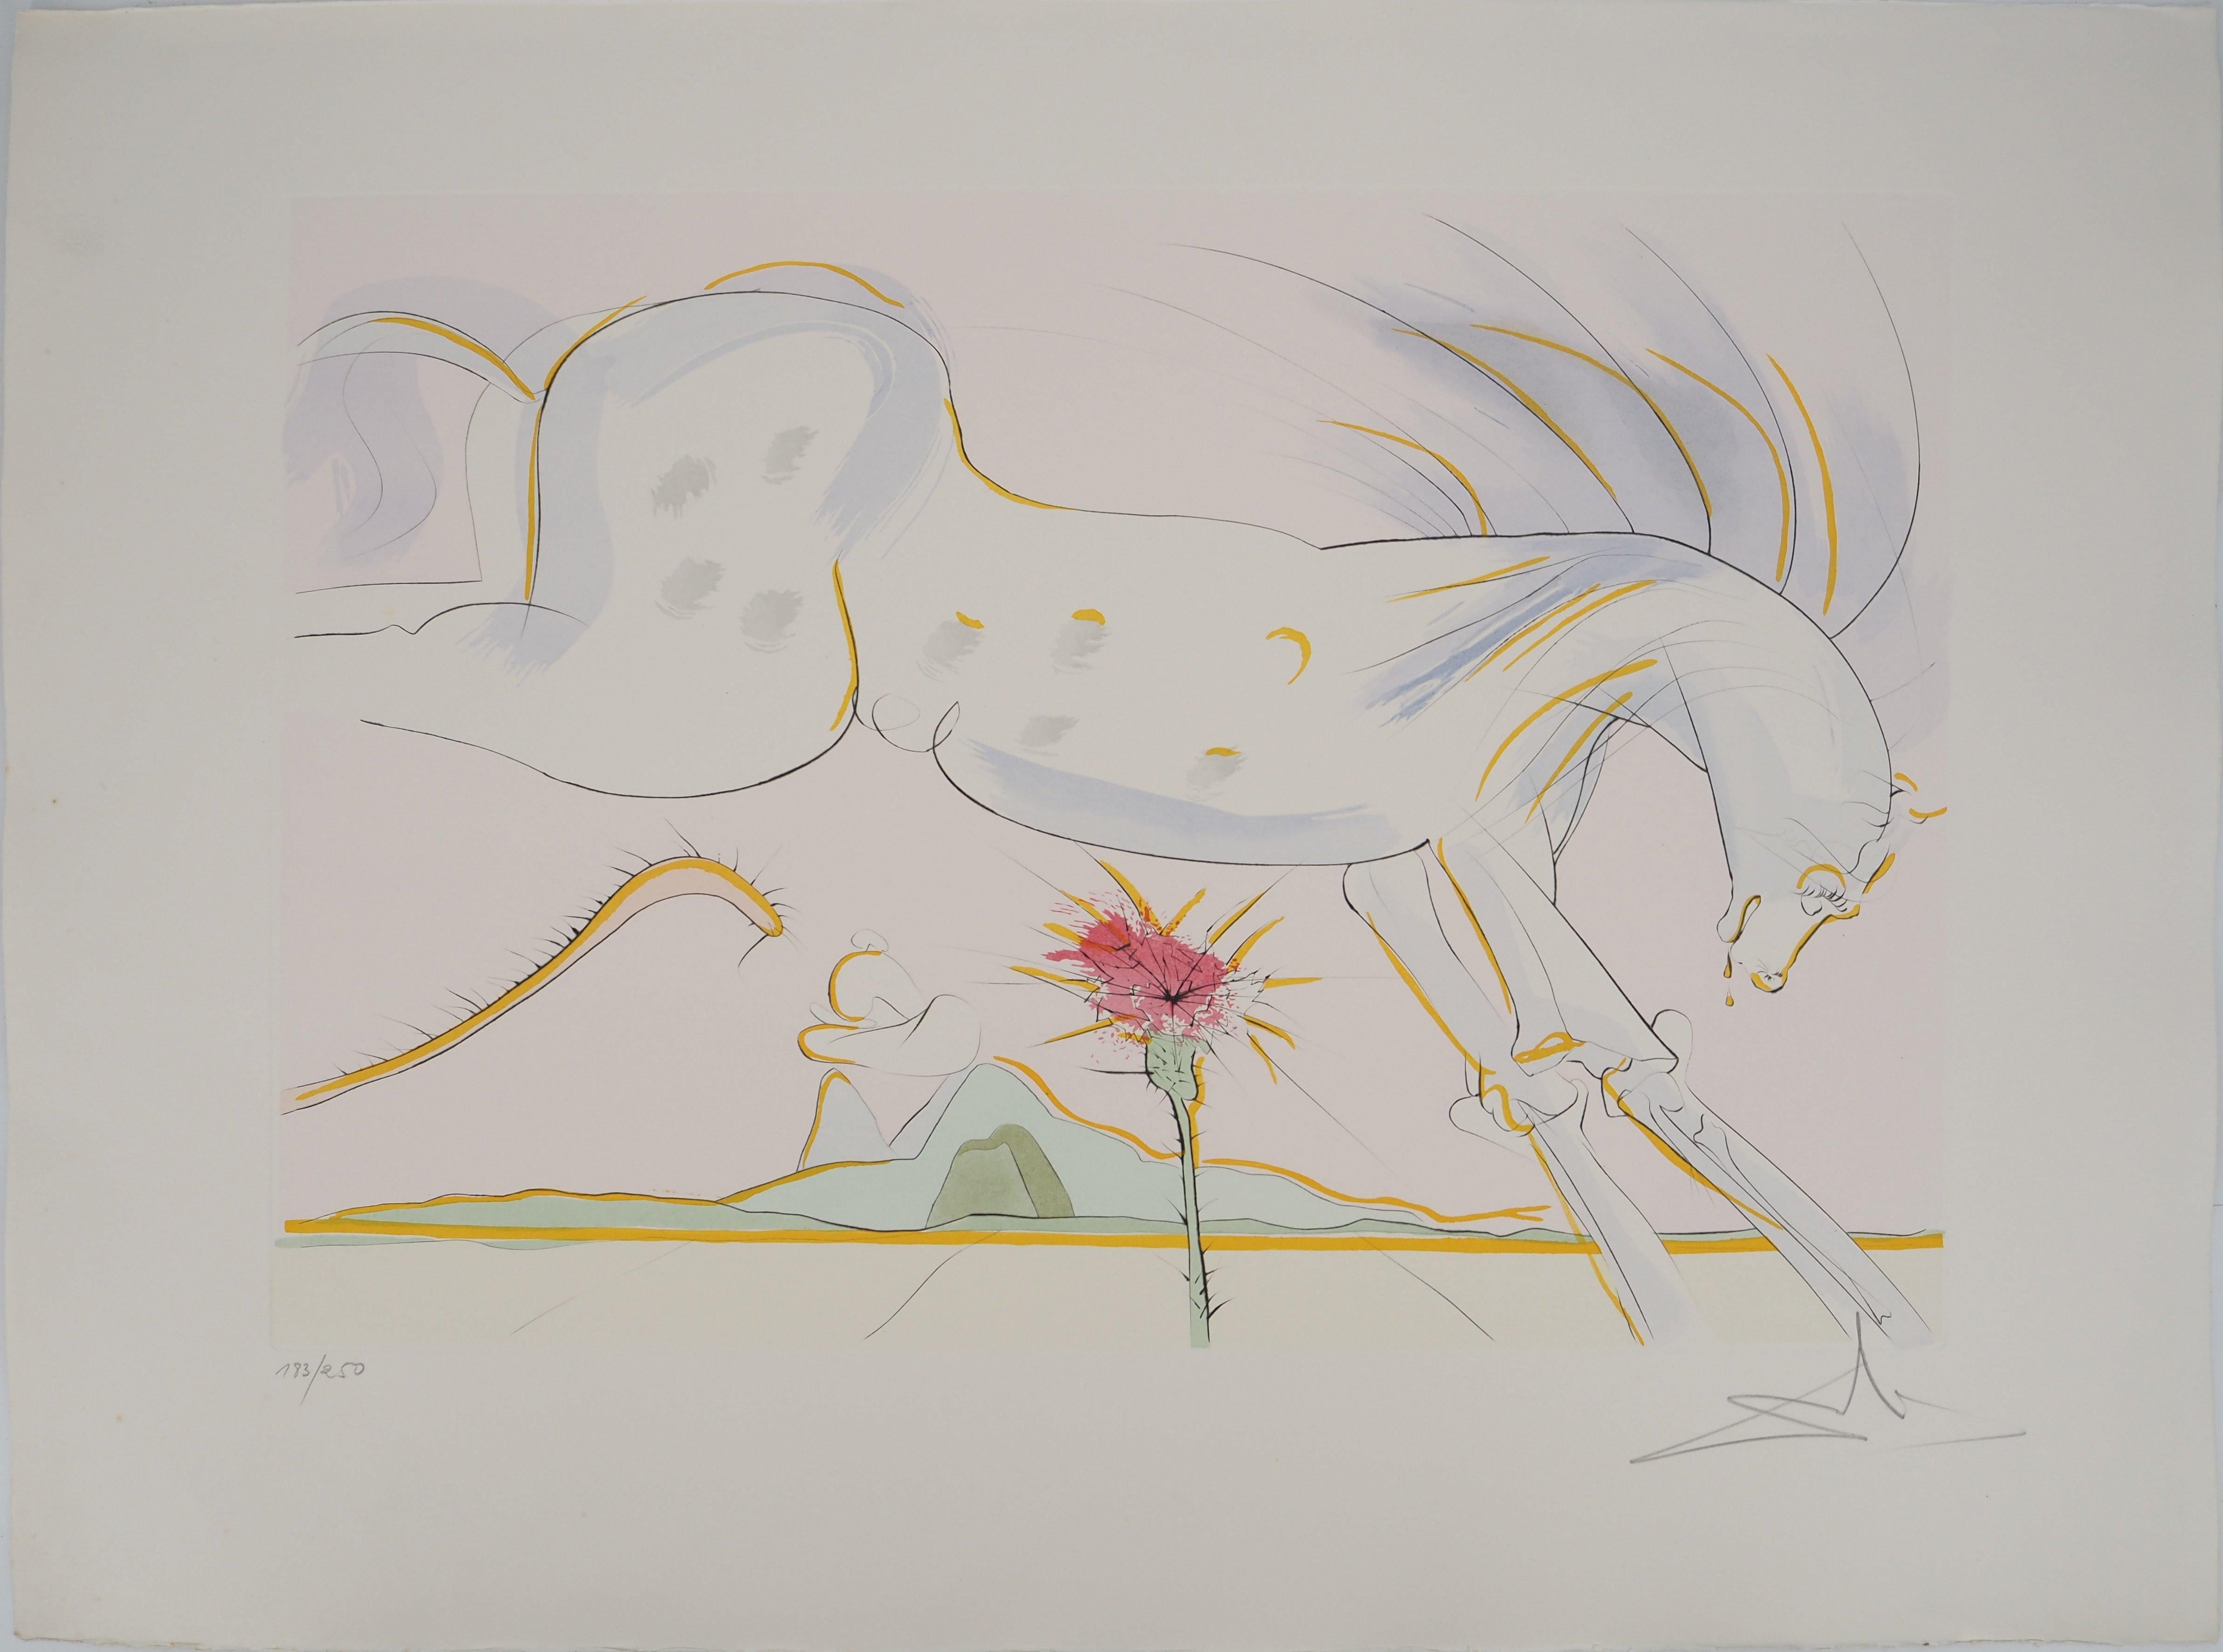 Animal Print Salvador Dalí - Le cheval et le loup - eau-forte originale, signée à la main, 1974